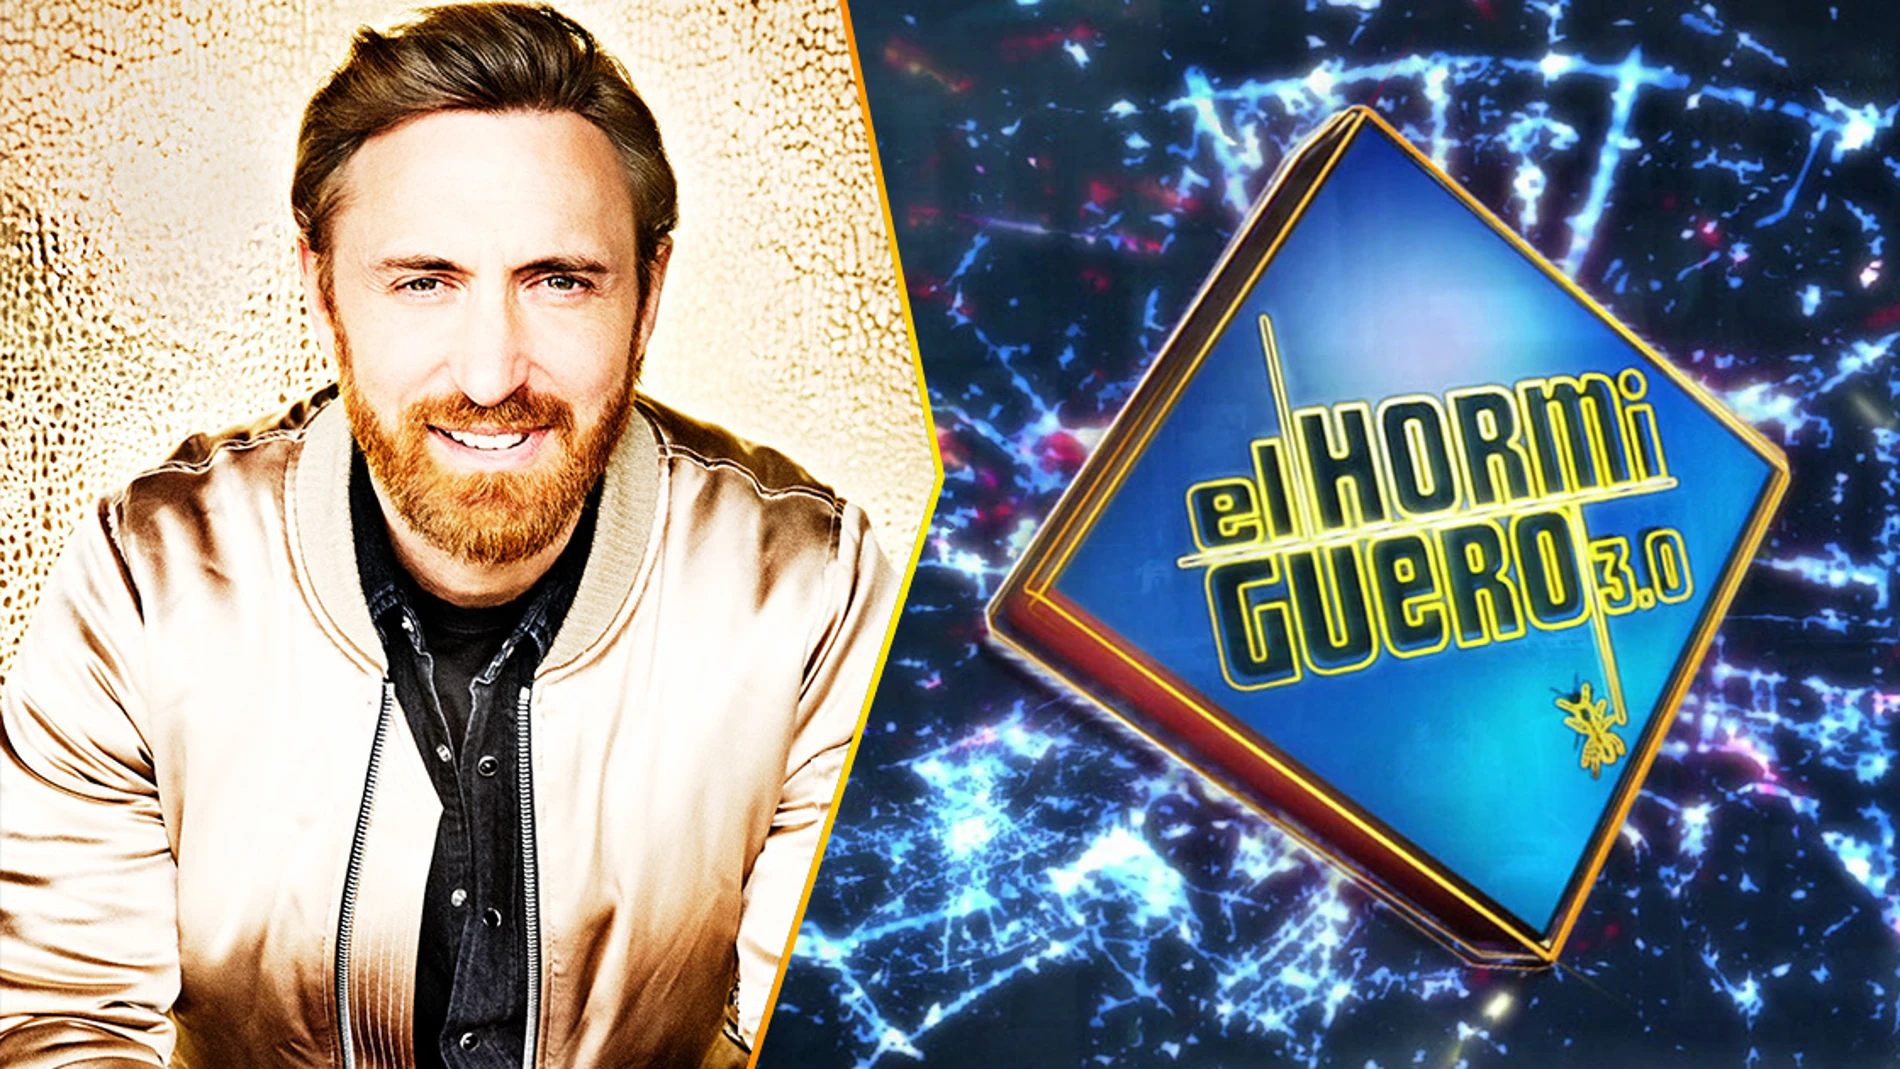 El próximo miércoles el plató de 'El Hormiguero 3.0' se moverá al ritmo de David Guetta